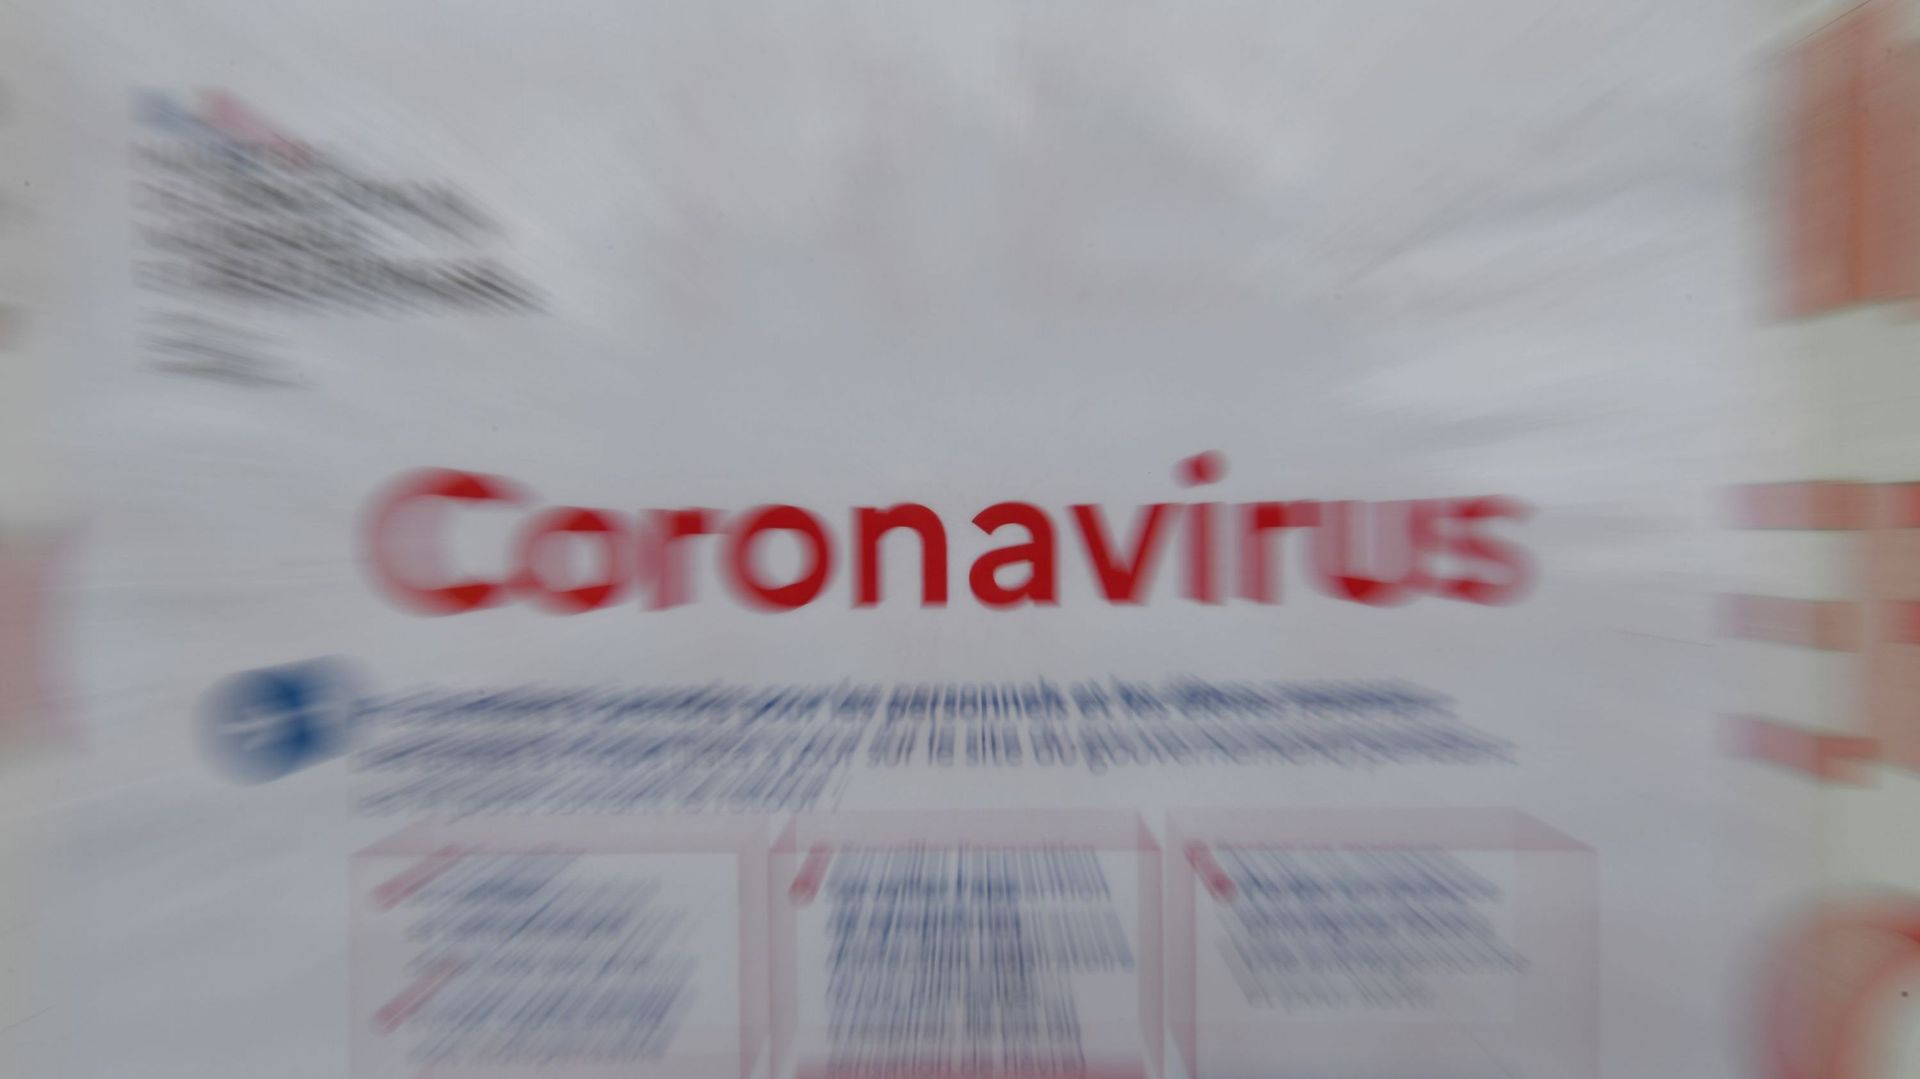 Coronavirus : aux citoyens d'être prudents pour éviter la propagation du virus selon l'ABSym